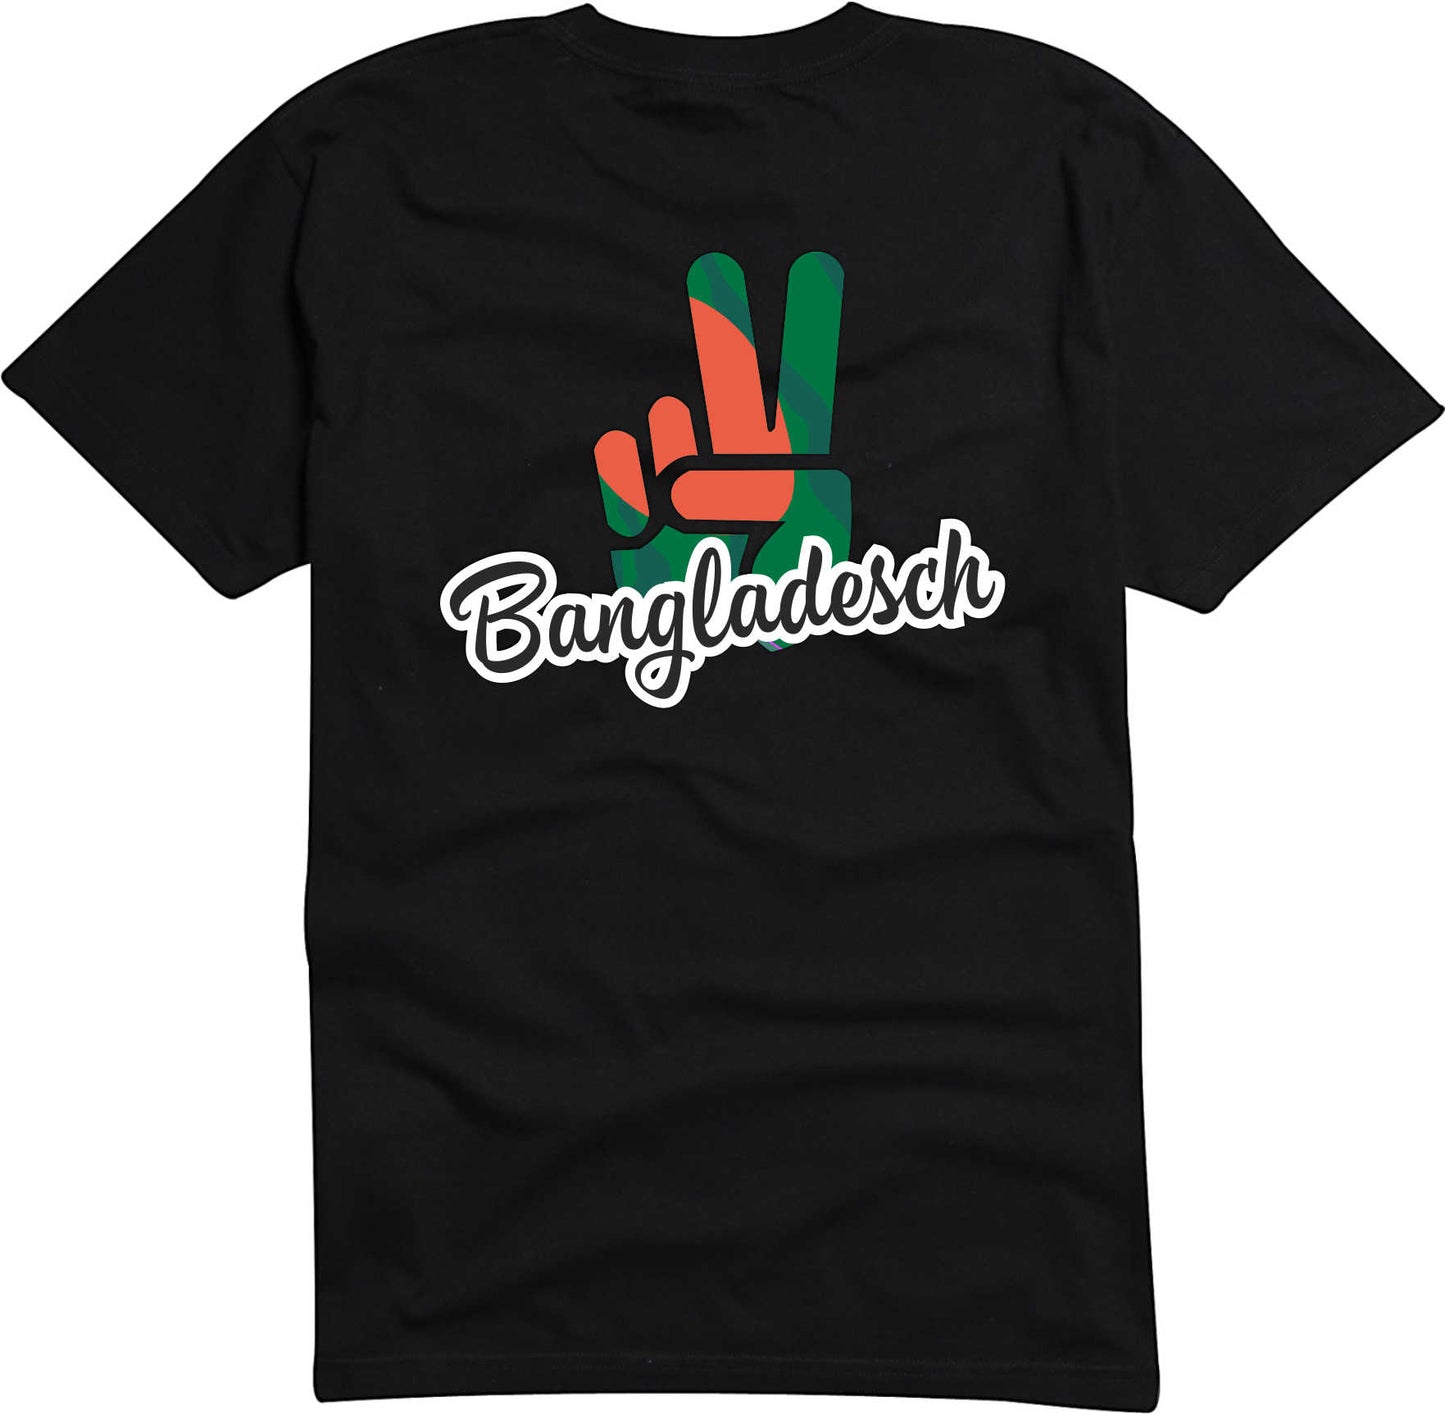 T-Shirt Herren - Victory - Flagge / Fahne - Bangladesch - Sieg